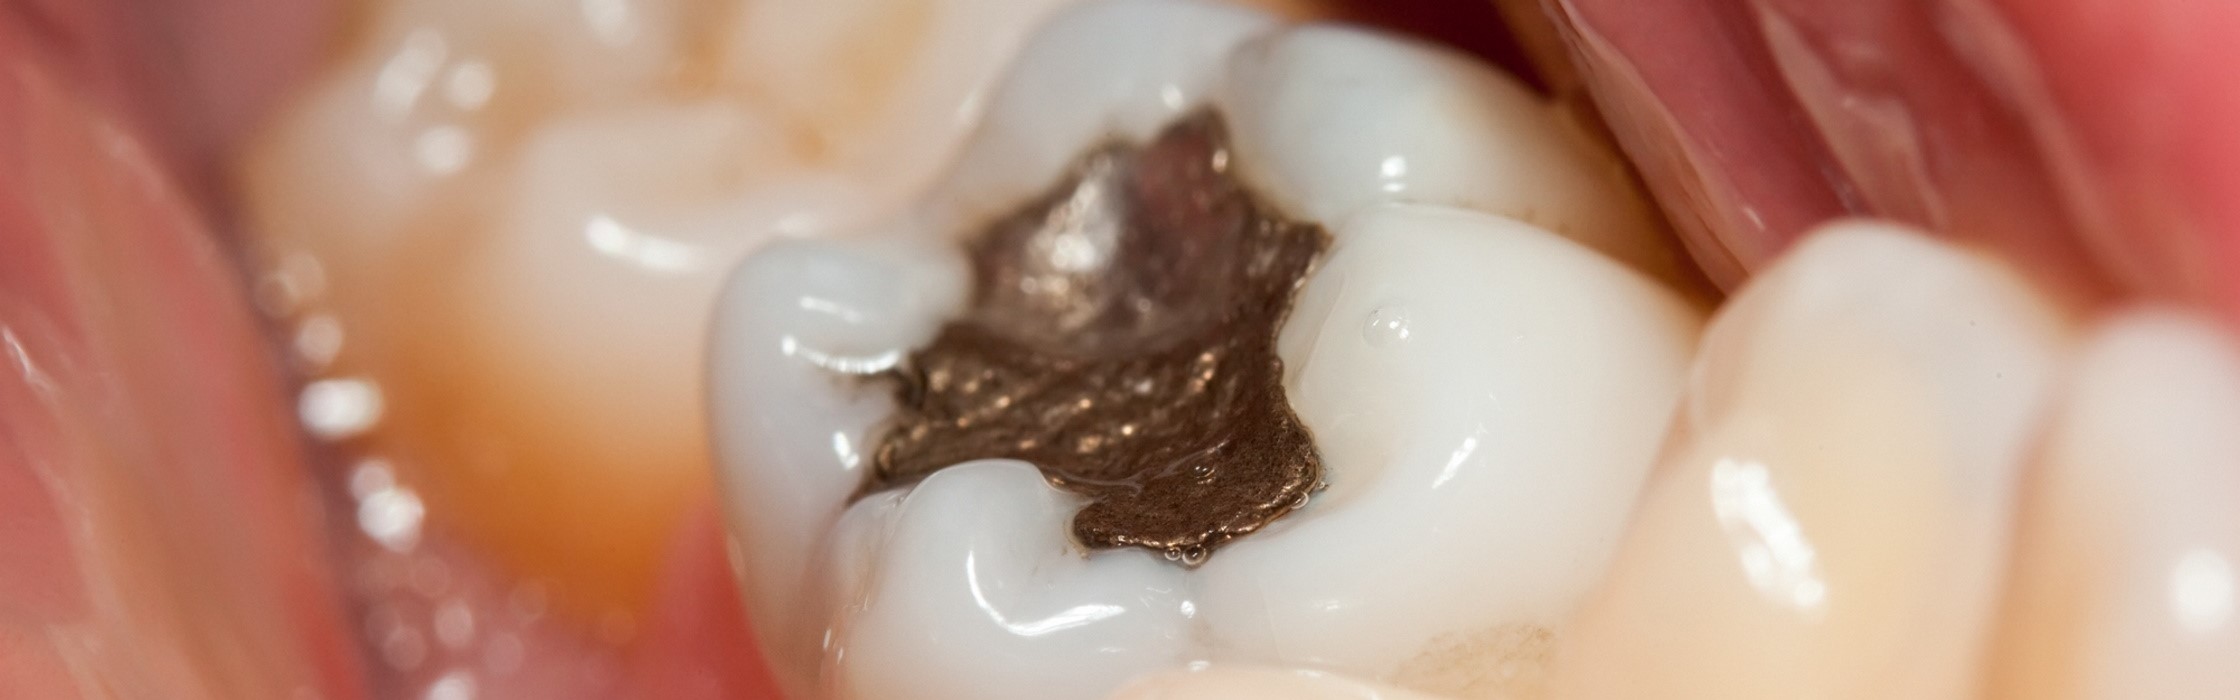 Zahnfüllungen aus Amalgam – gesundheitliches Risiko oder unbedenklich?